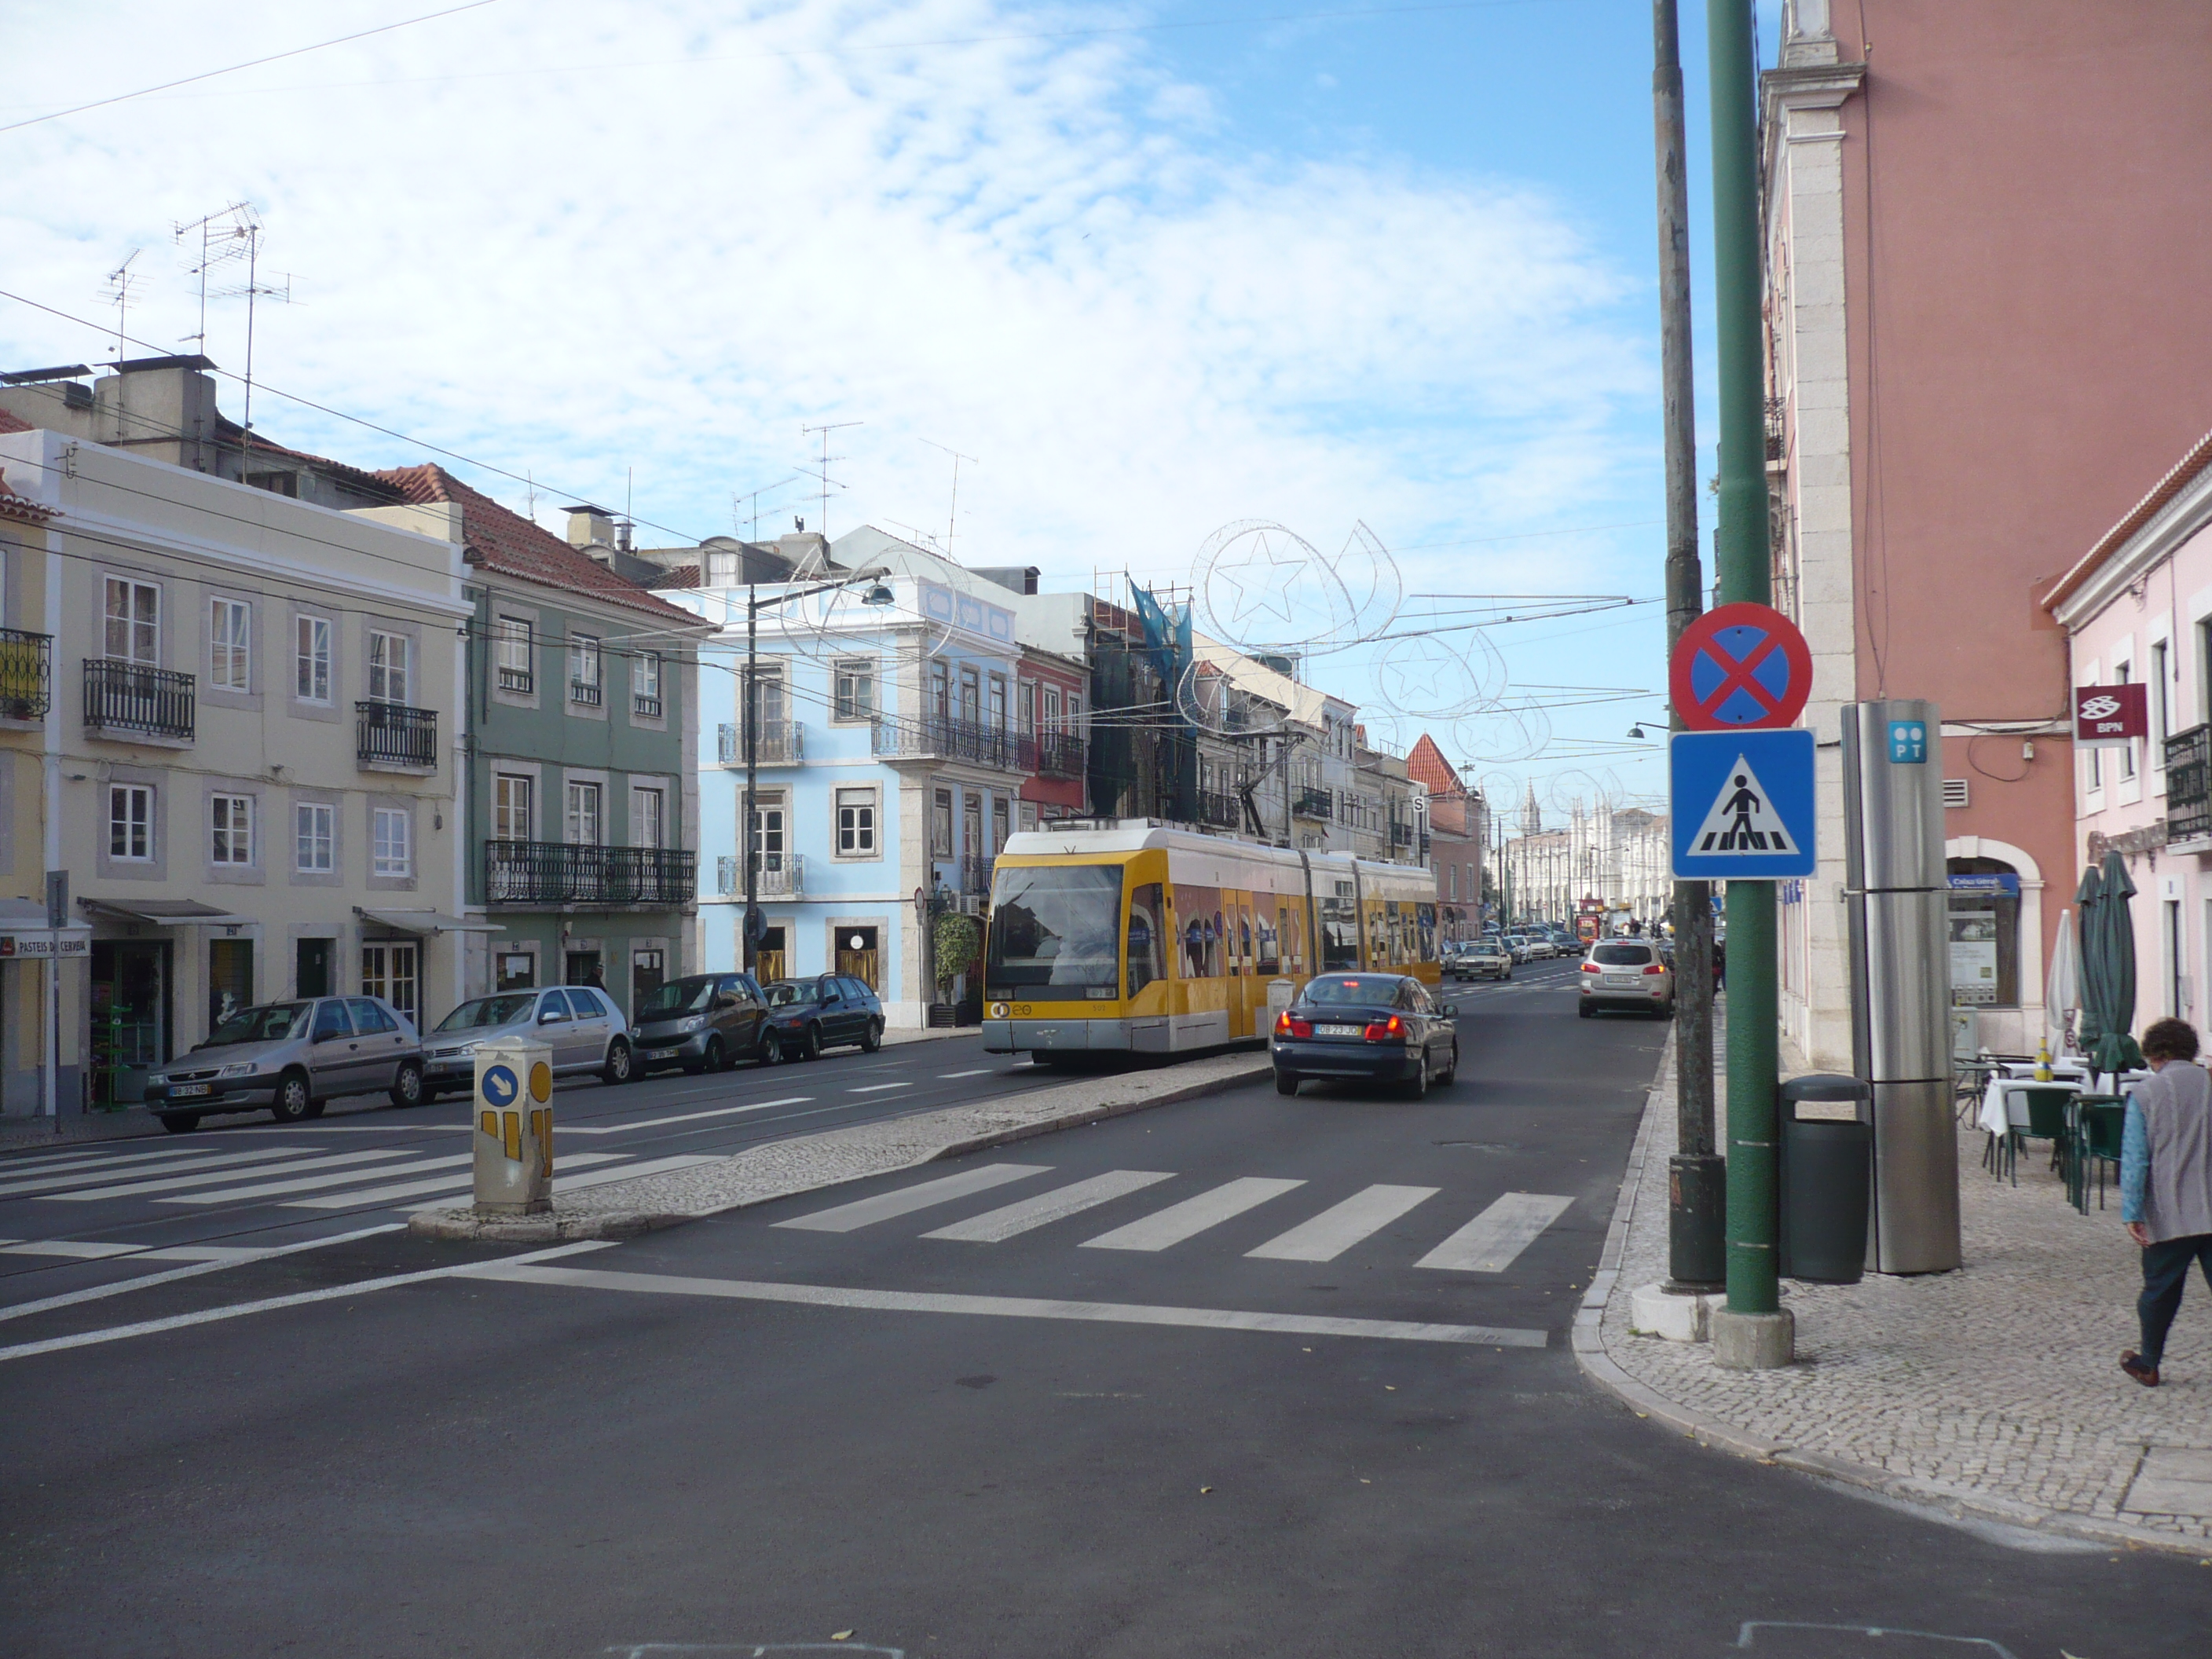 Lisbon modern tram